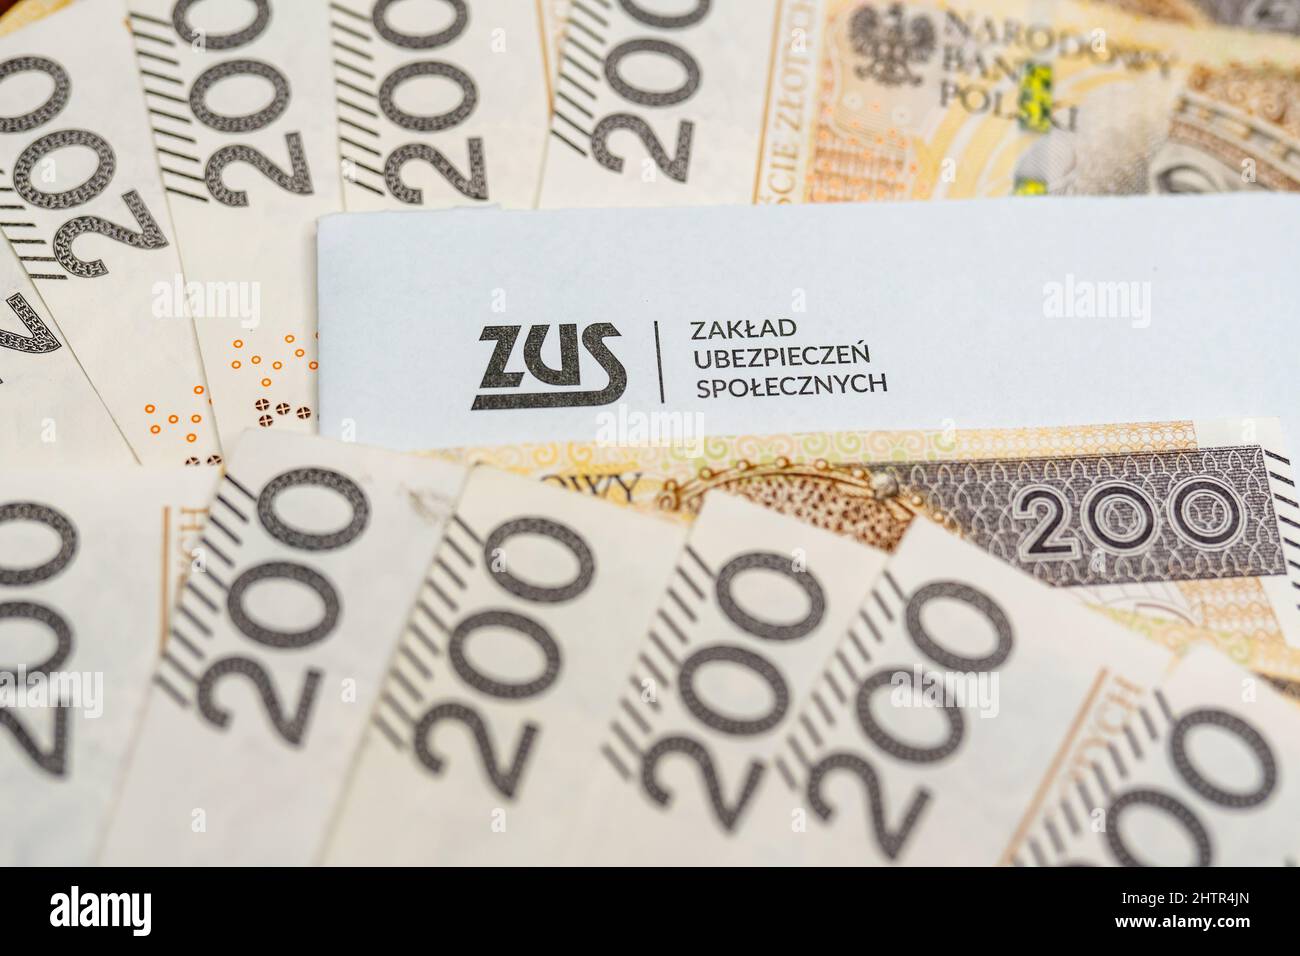 Fotografia editoriale illustrativa di Zakład Ubezpieczeń Społecznych ZUS - concetto di Ufficio nazionale delle assicurazioni e delle pensioni polacco. Foto Stock